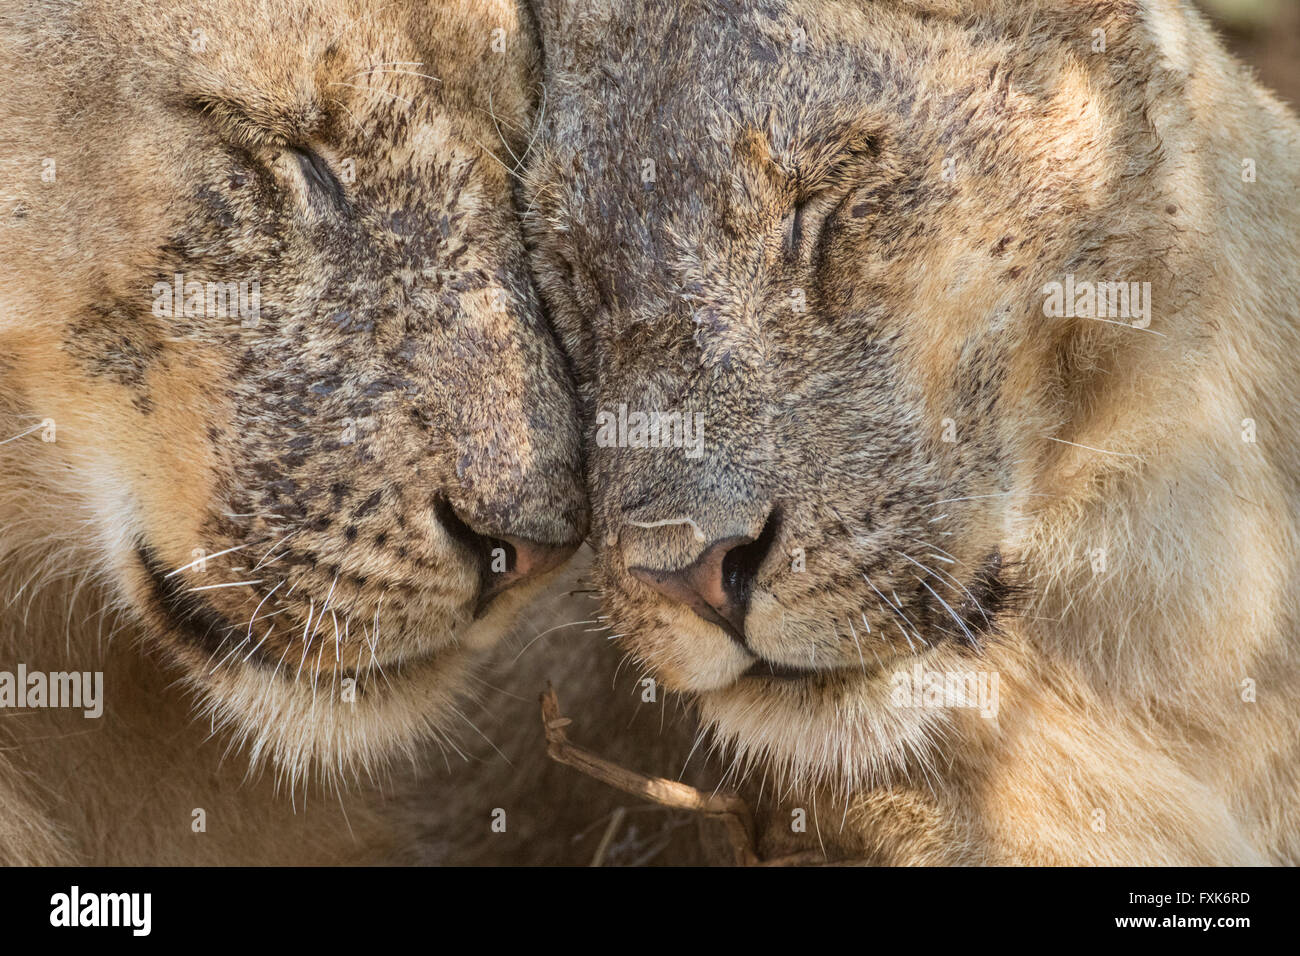 Les lions (Panthera leo), portrait, l'affichage de l'affection, le parc national de South Luangwa, en Zambie Banque D'Images